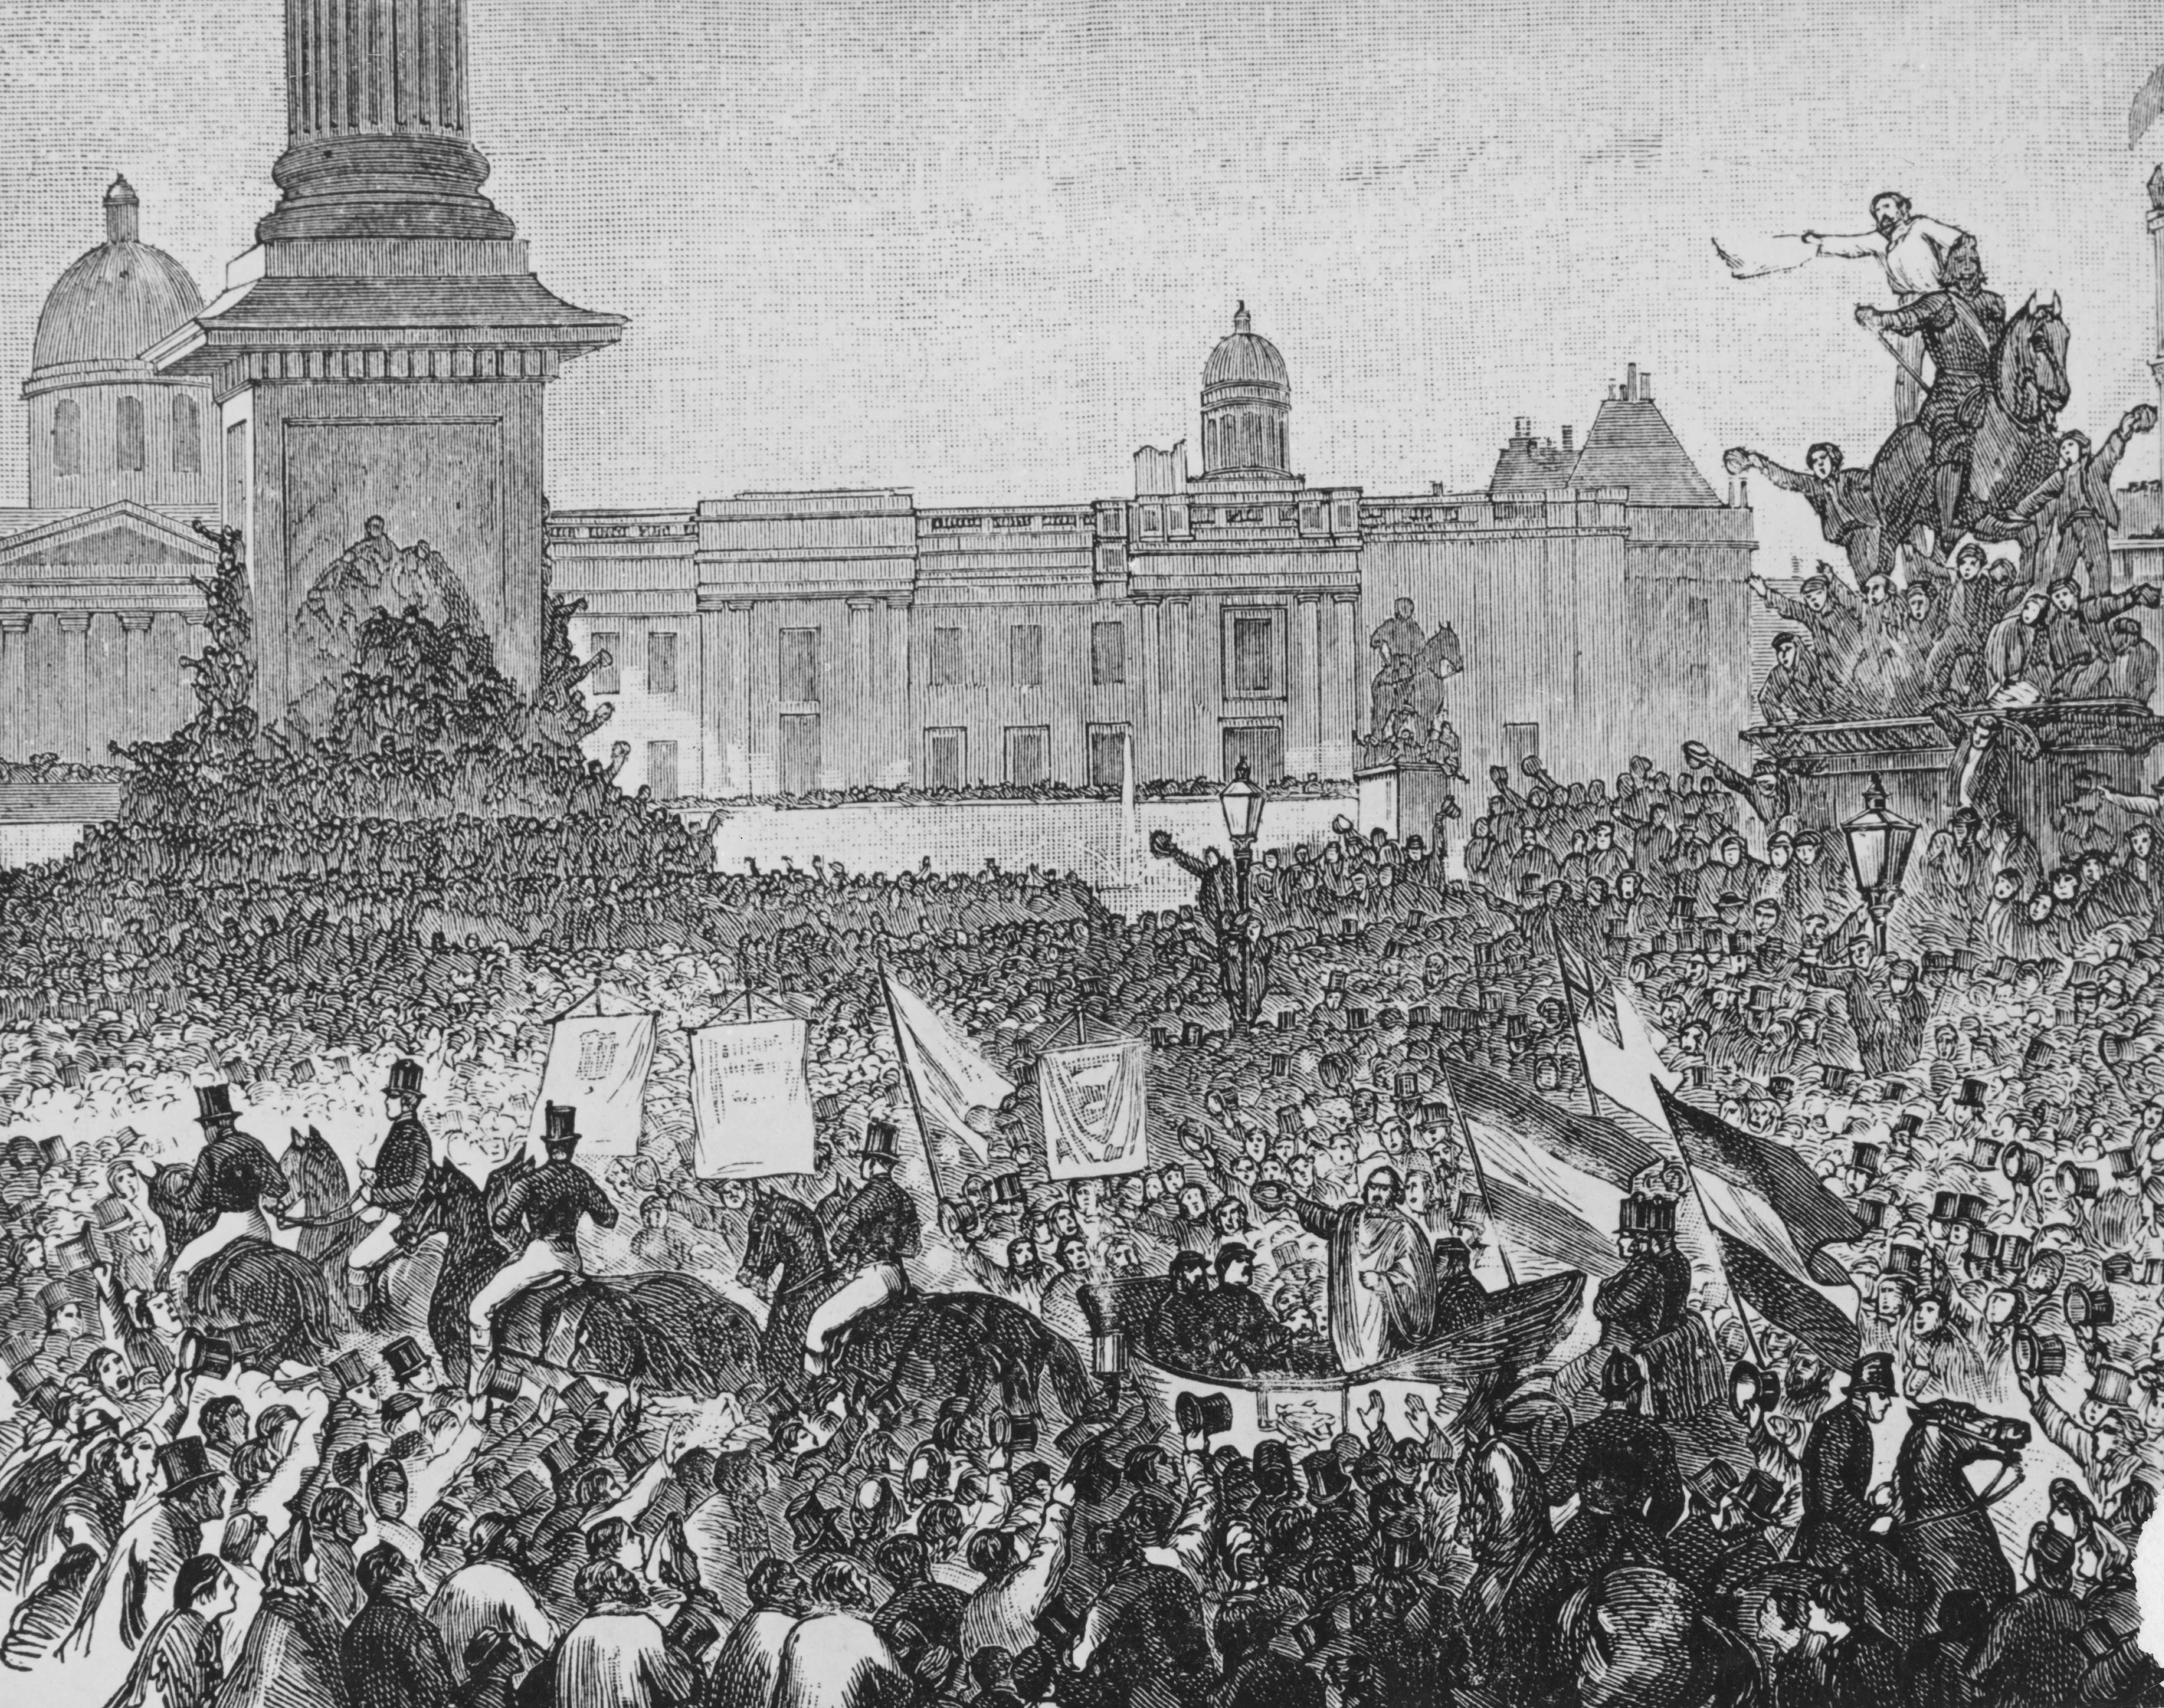 Stampa che ritrae l'accoglienza ricevuta da Garibaldi nel 1864 a Londra. La sua fama internazionale cresce dopo la spedizione dei Mille e la liberazione dal Regno delle Due Sicilie